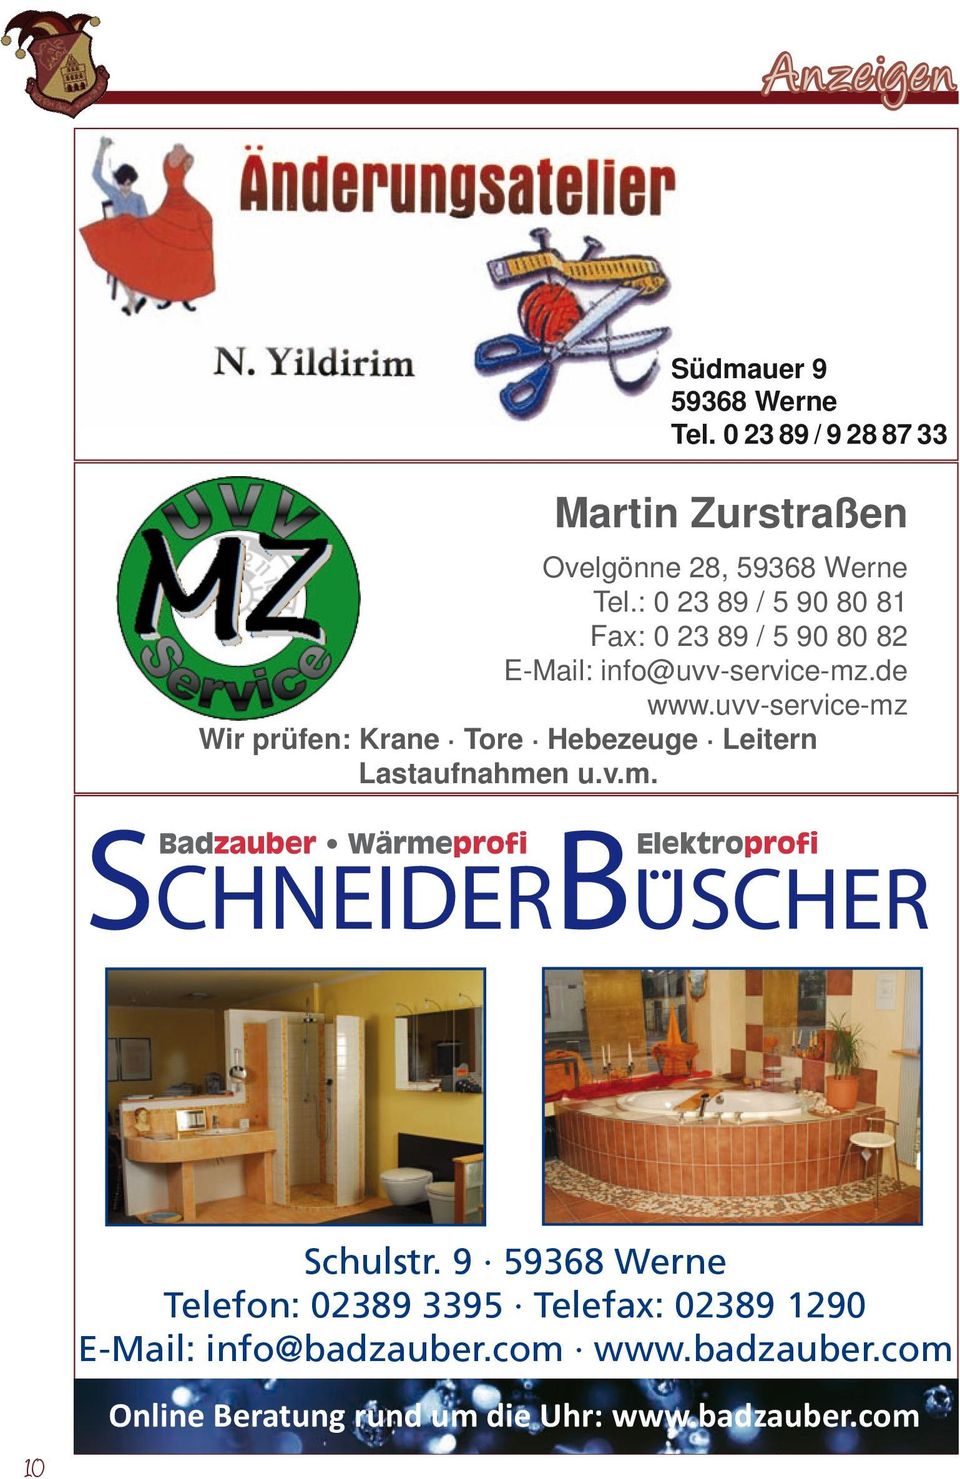 badzauber.com Jörg Schneider Schulstr. 9 59368 Werne St.-Nr.: 333/5870/0183 HRA 15493 / HRB 18057 Telefon: 02389 3395 Telefax: 02389 1290 Telefon: 02389 3395 USt.